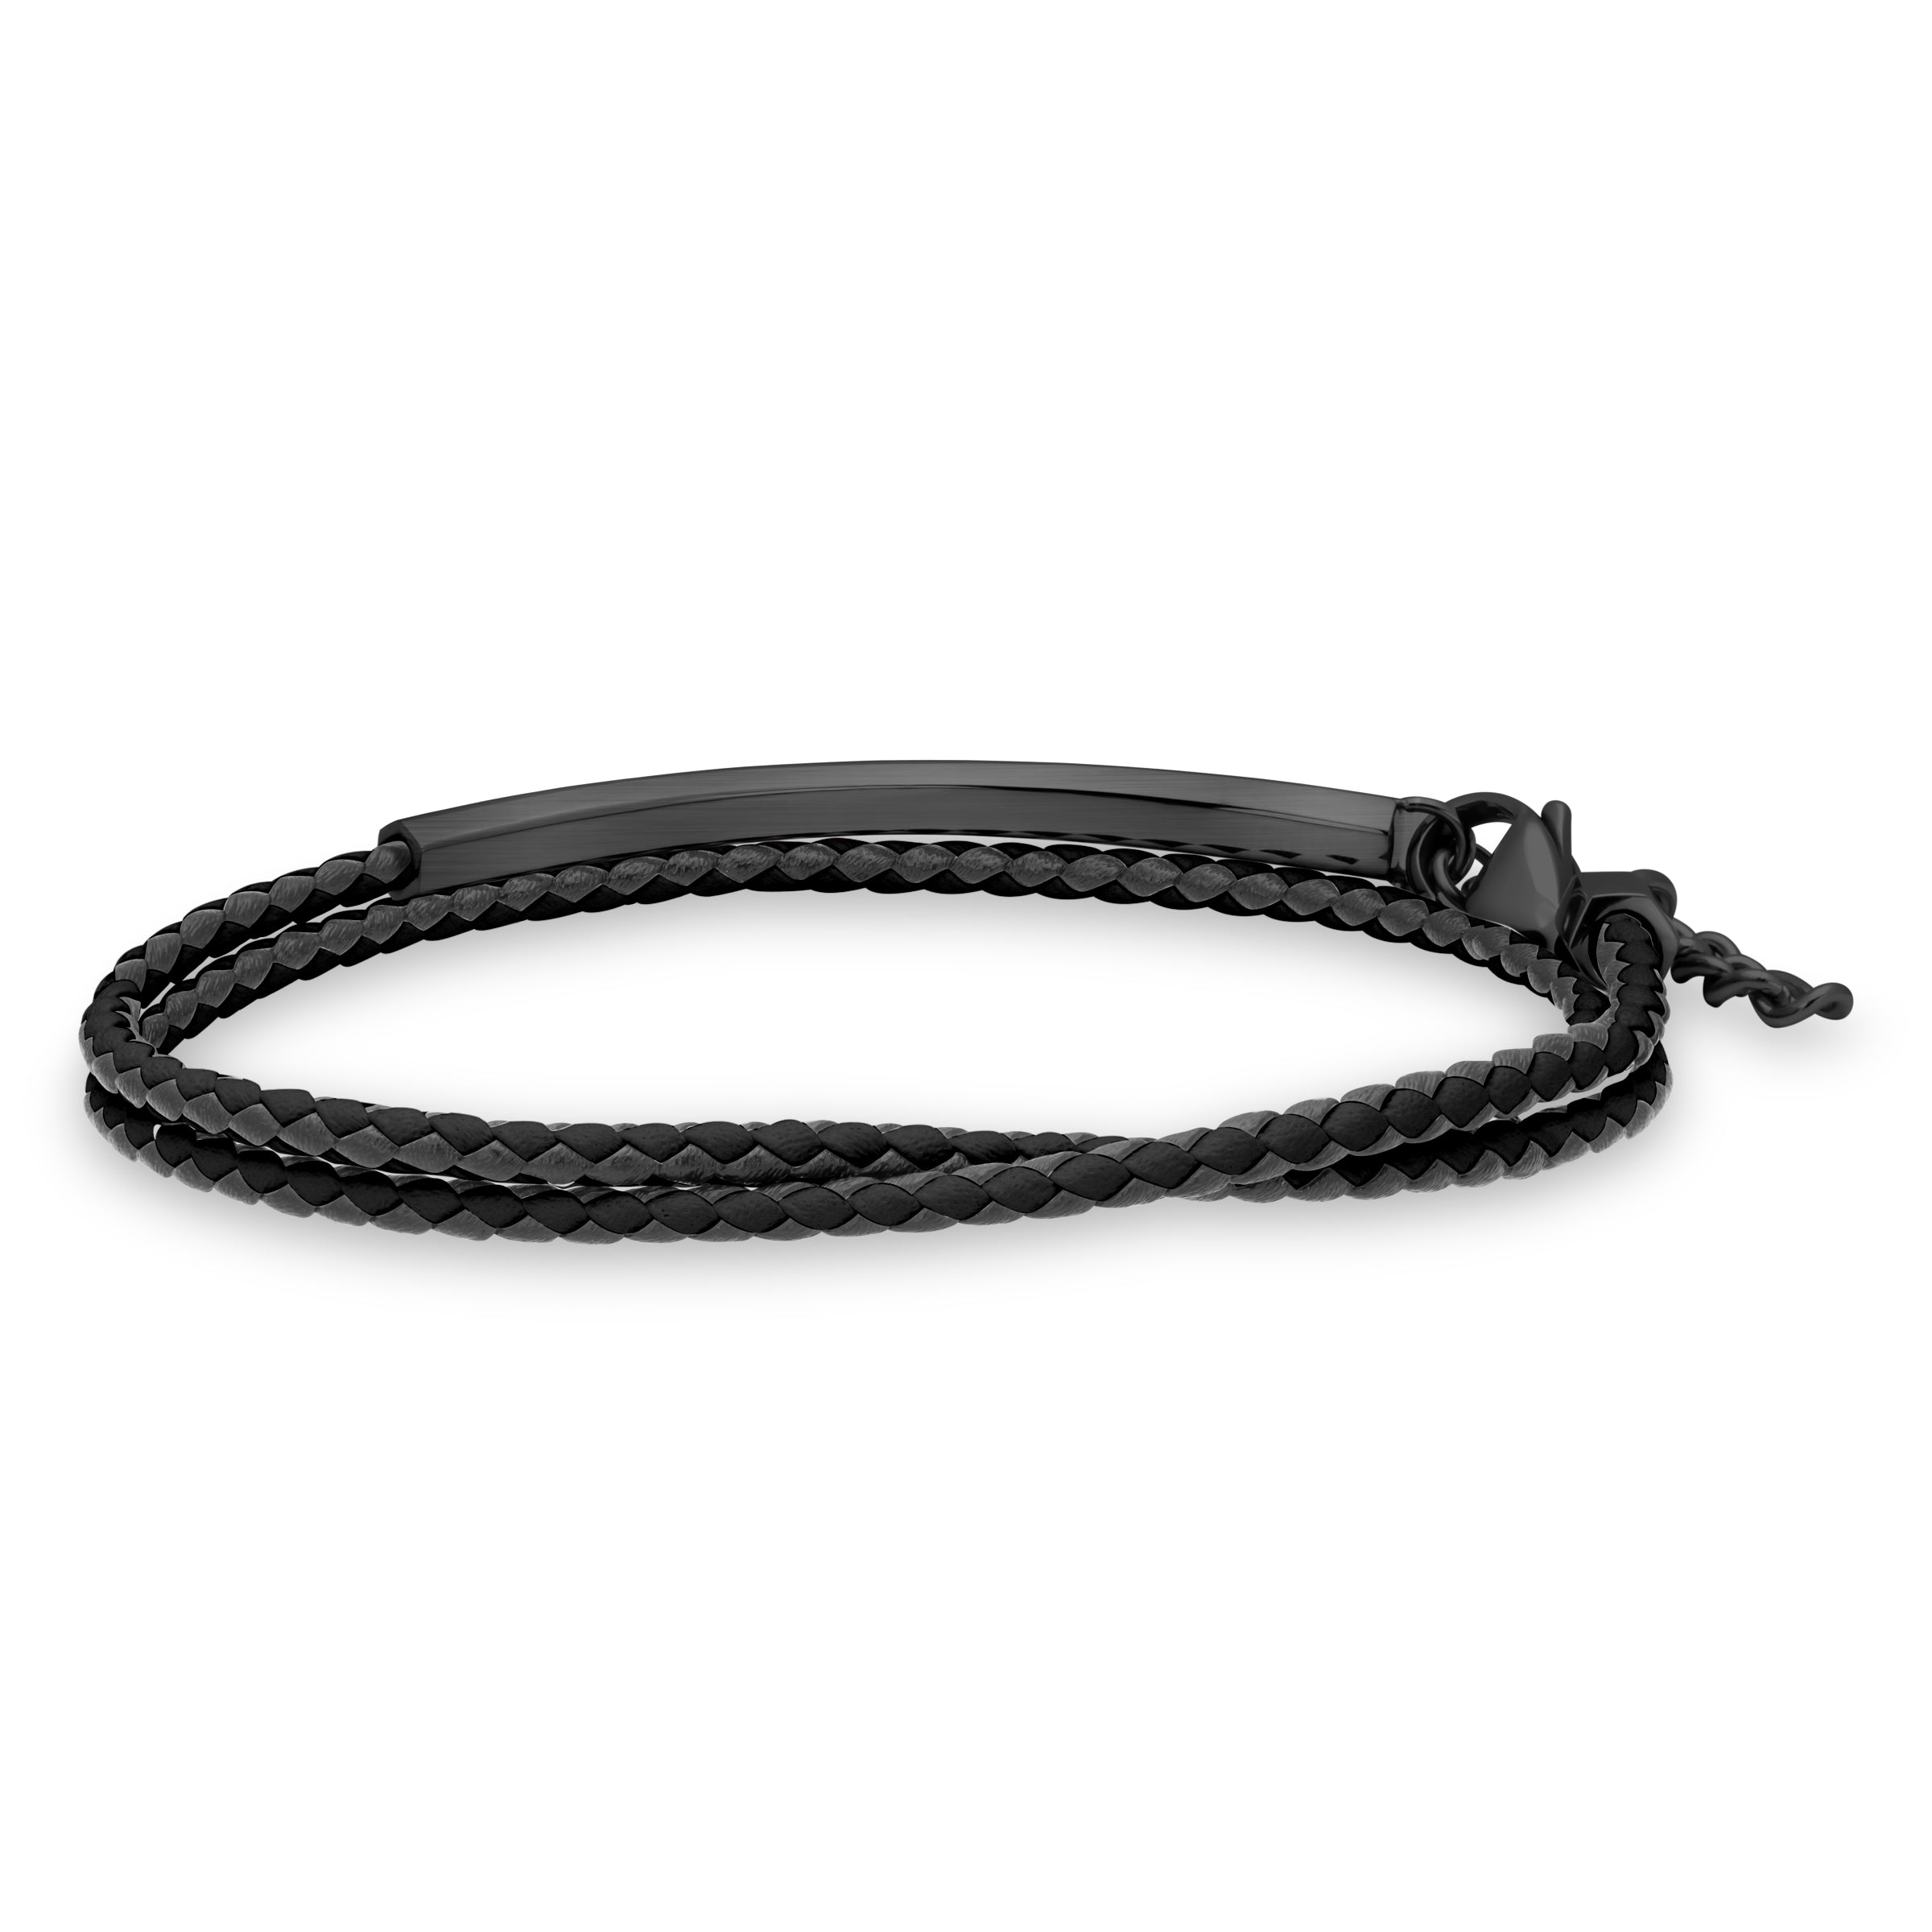 Cerruti Black Bracelet for Men - CERBR-0037